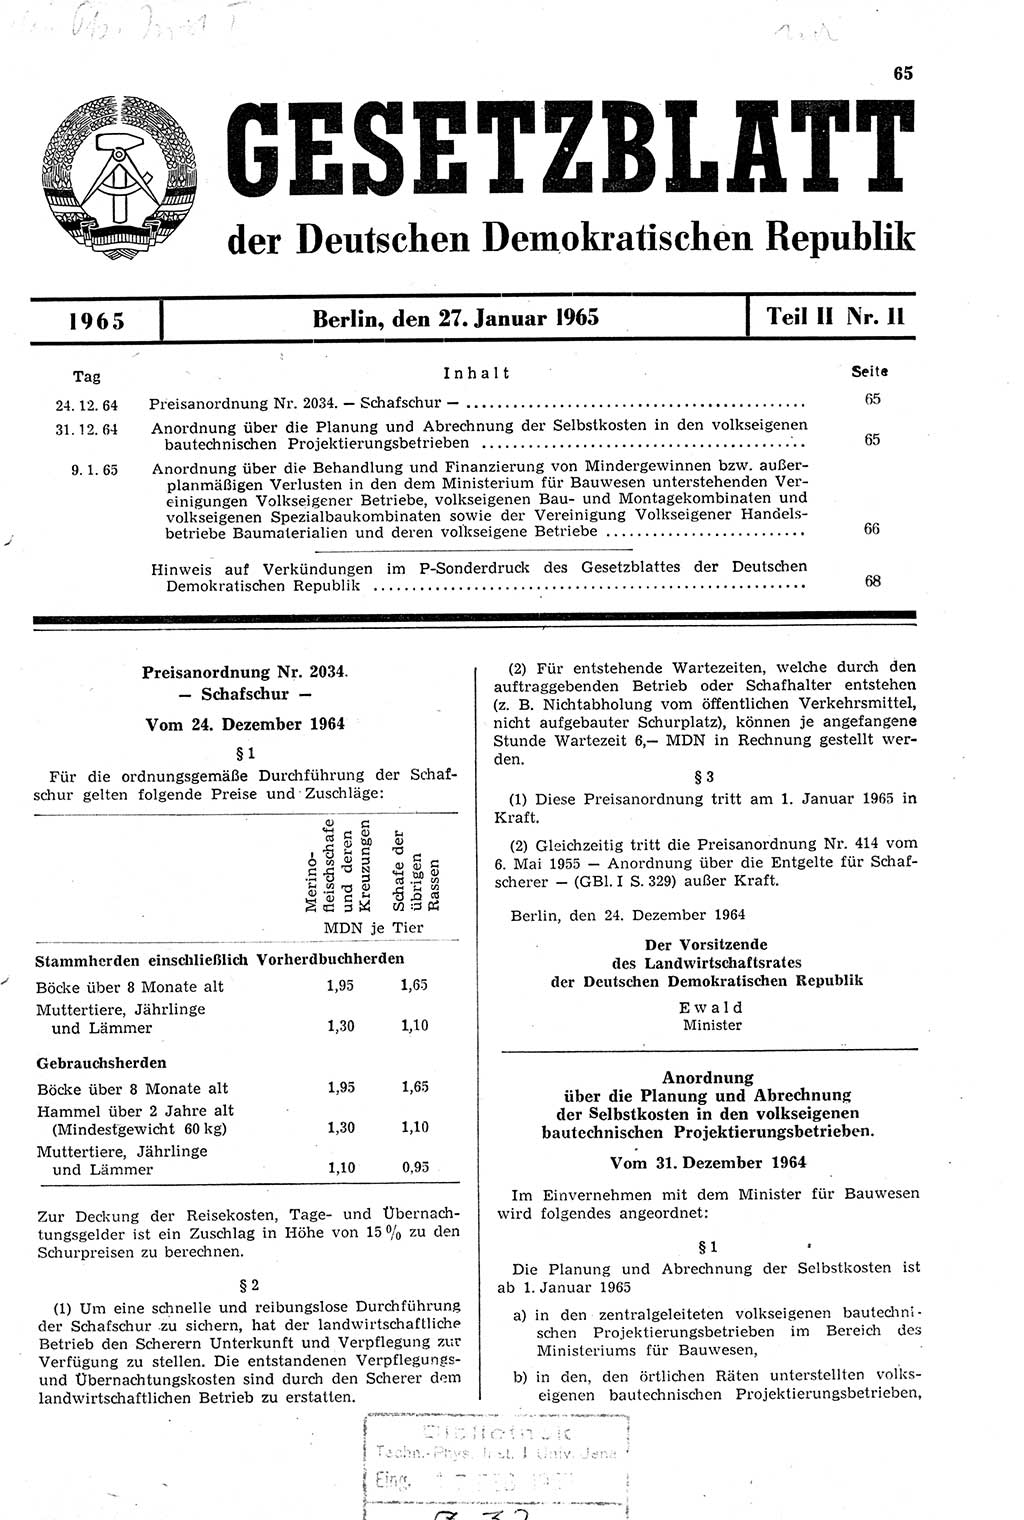 Gesetzblatt (GBl.) der Deutschen Demokratischen Republik (DDR) Teil ⅠⅠ 1965, Seite 65 (GBl. DDR ⅠⅠ 1965, S. 65)